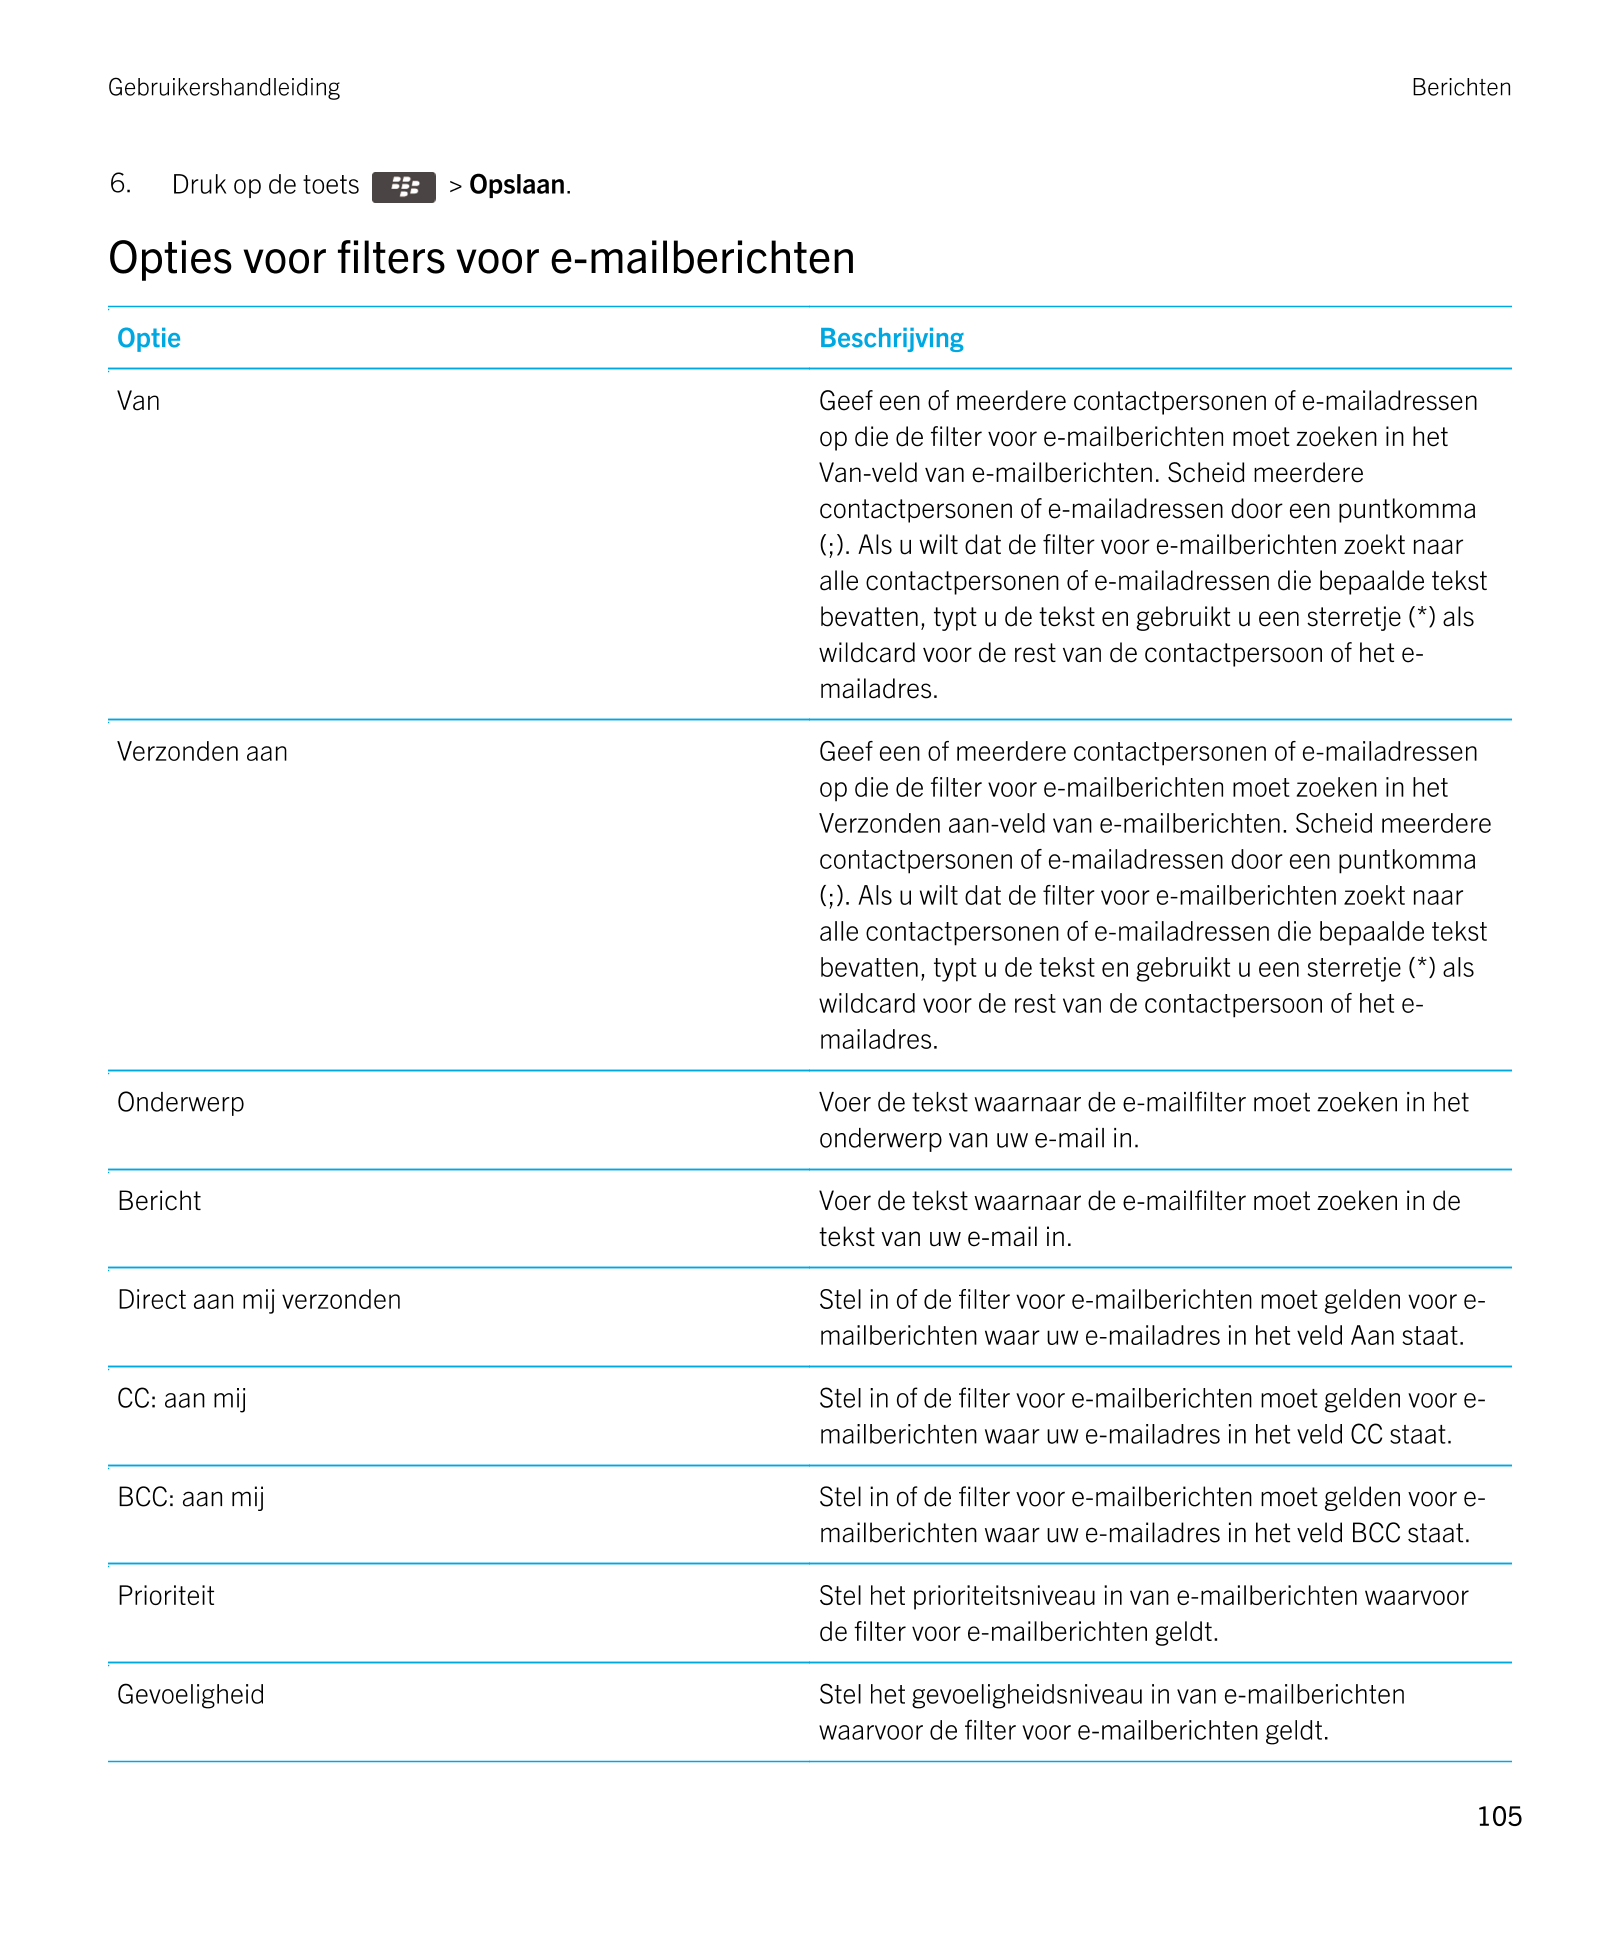 Gebruikershandleiding Berichten
6. Druk op de toets    >  Opslaan. 
Opties voor filters voor e-mailberichten
Optie Beschrijving
